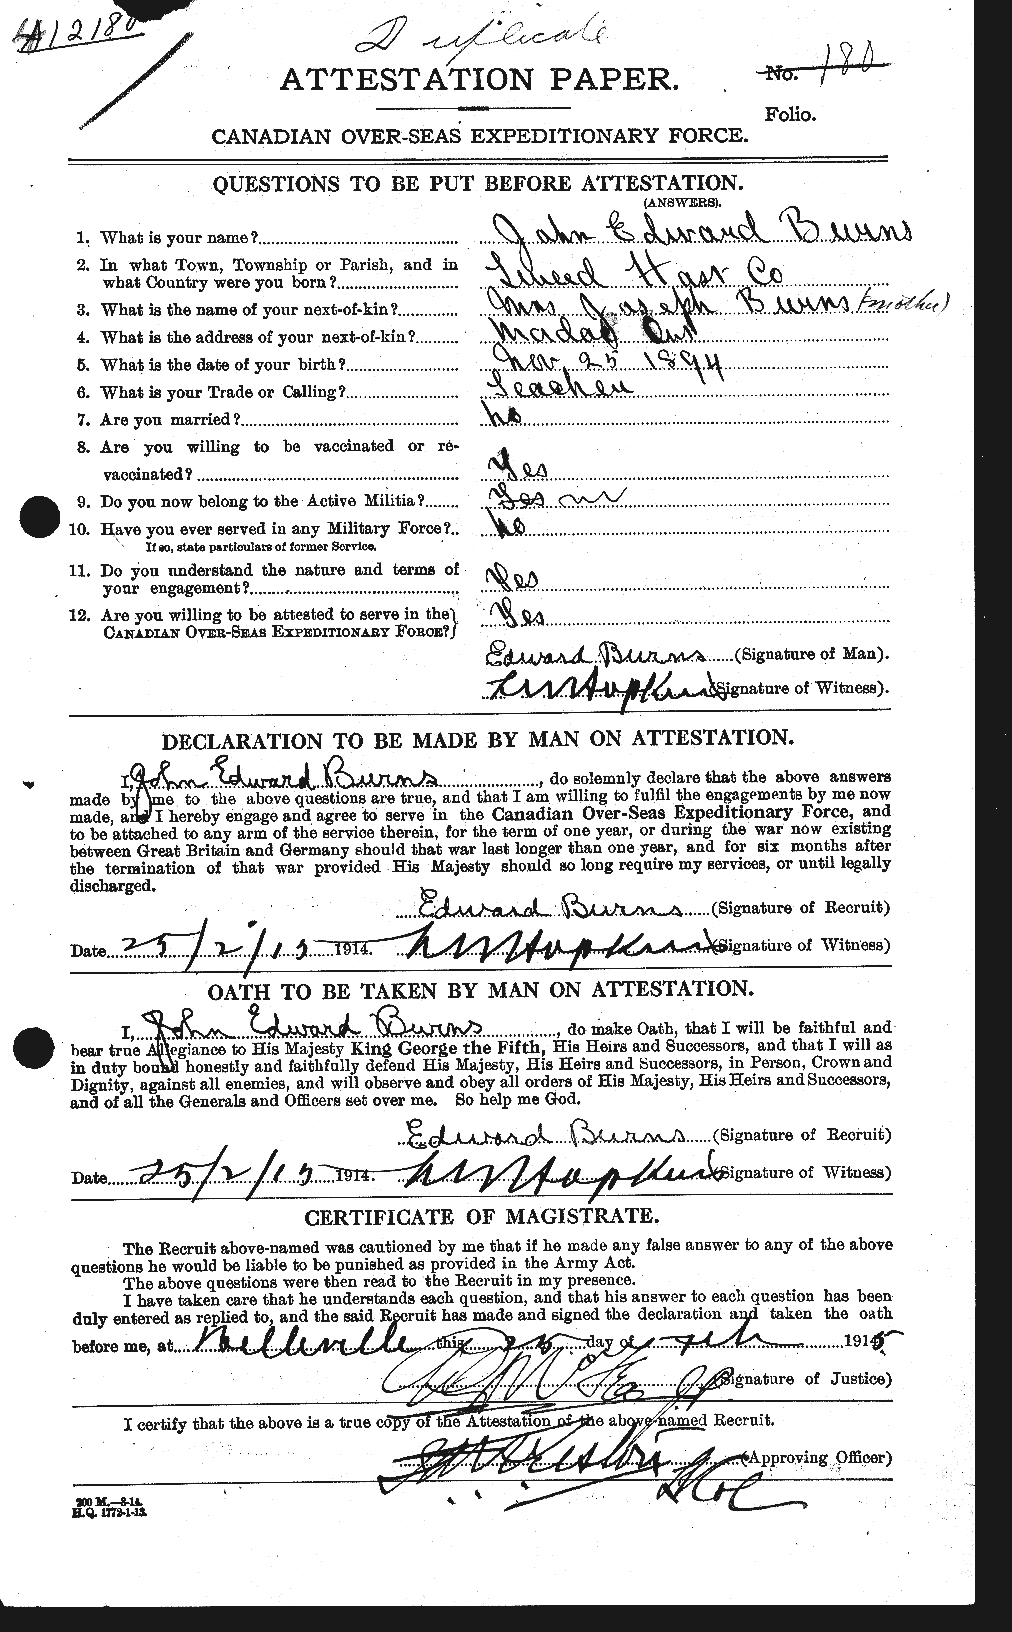 Dossiers du Personnel de la Première Guerre mondiale - CEC 275481a